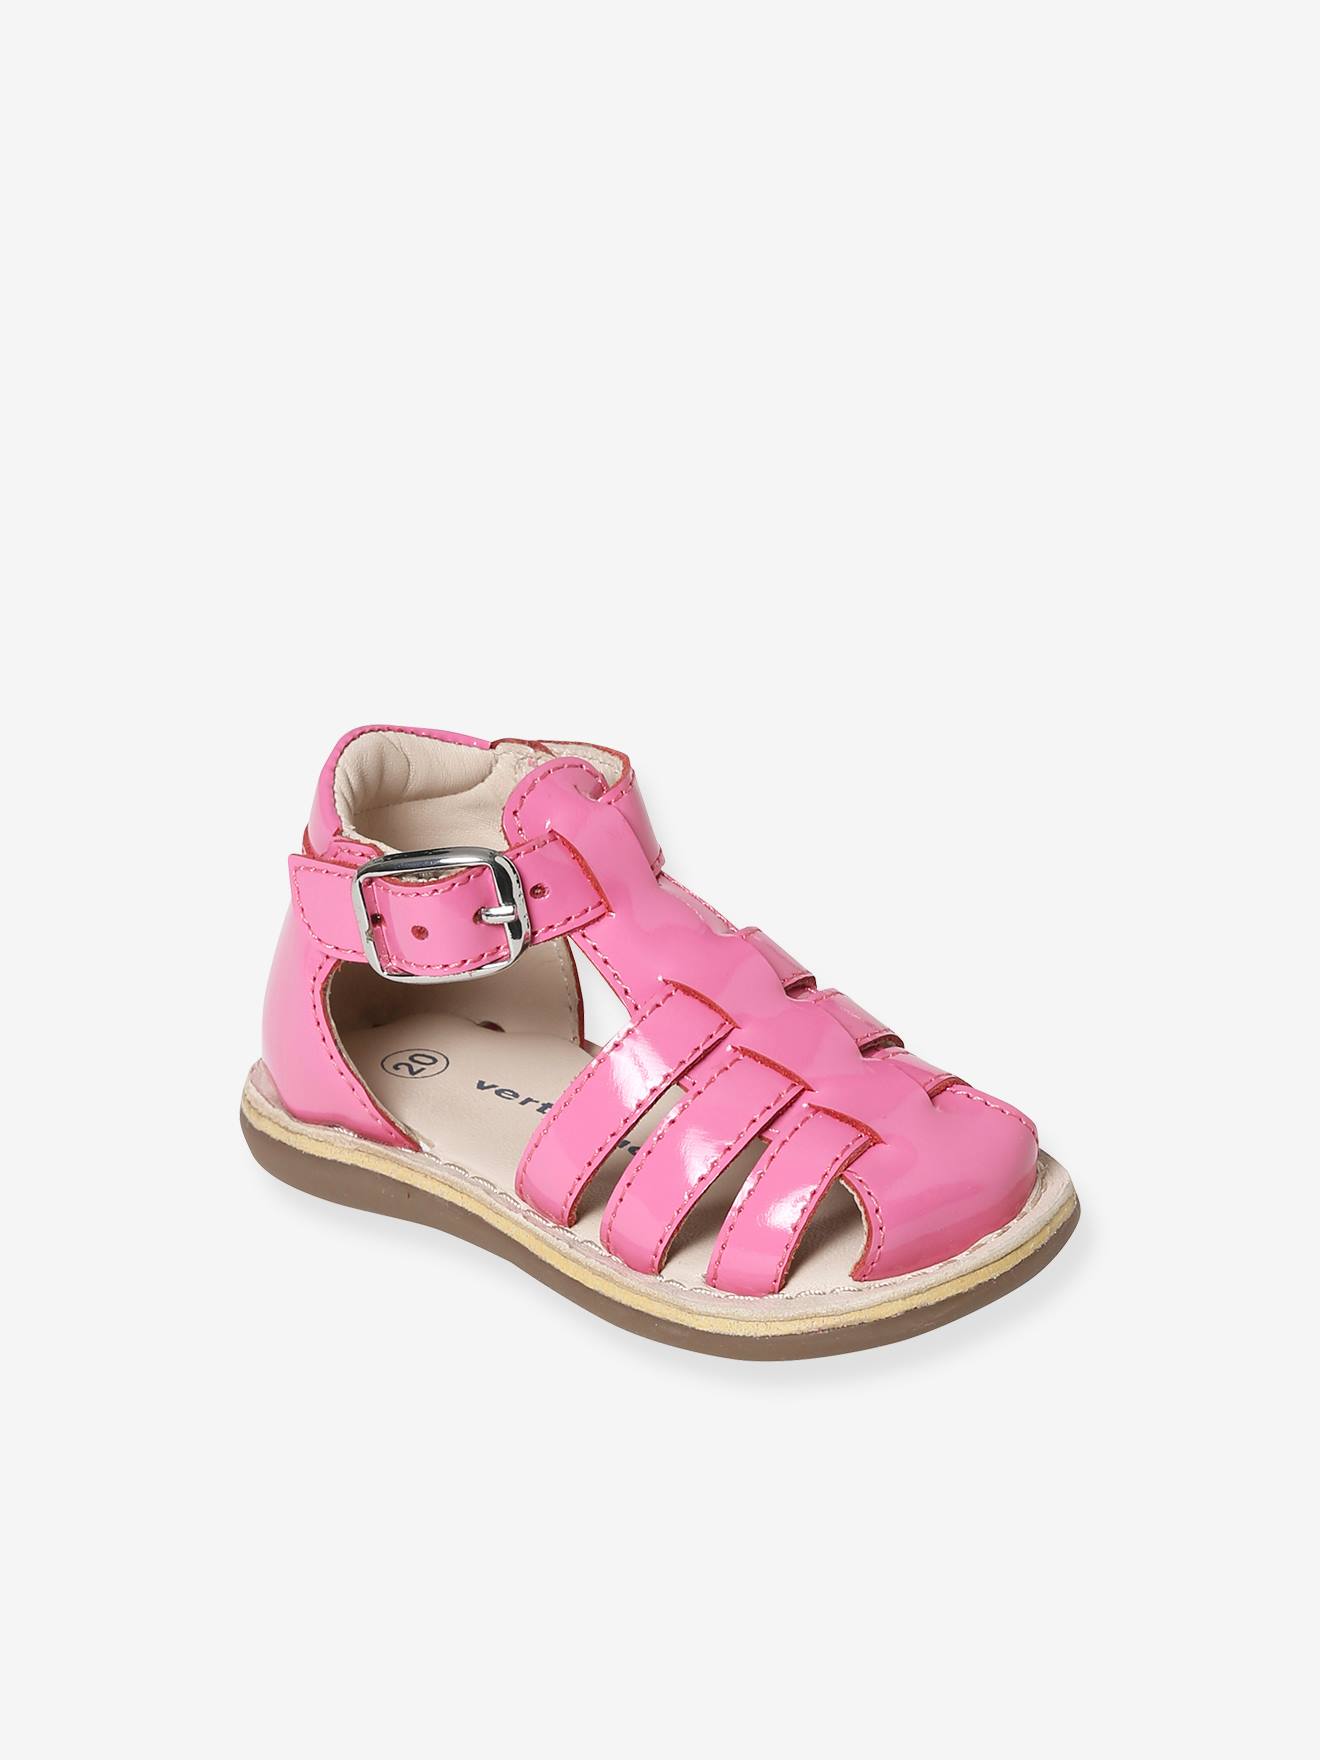 Sandales cuir bébé fille bout fermé rose